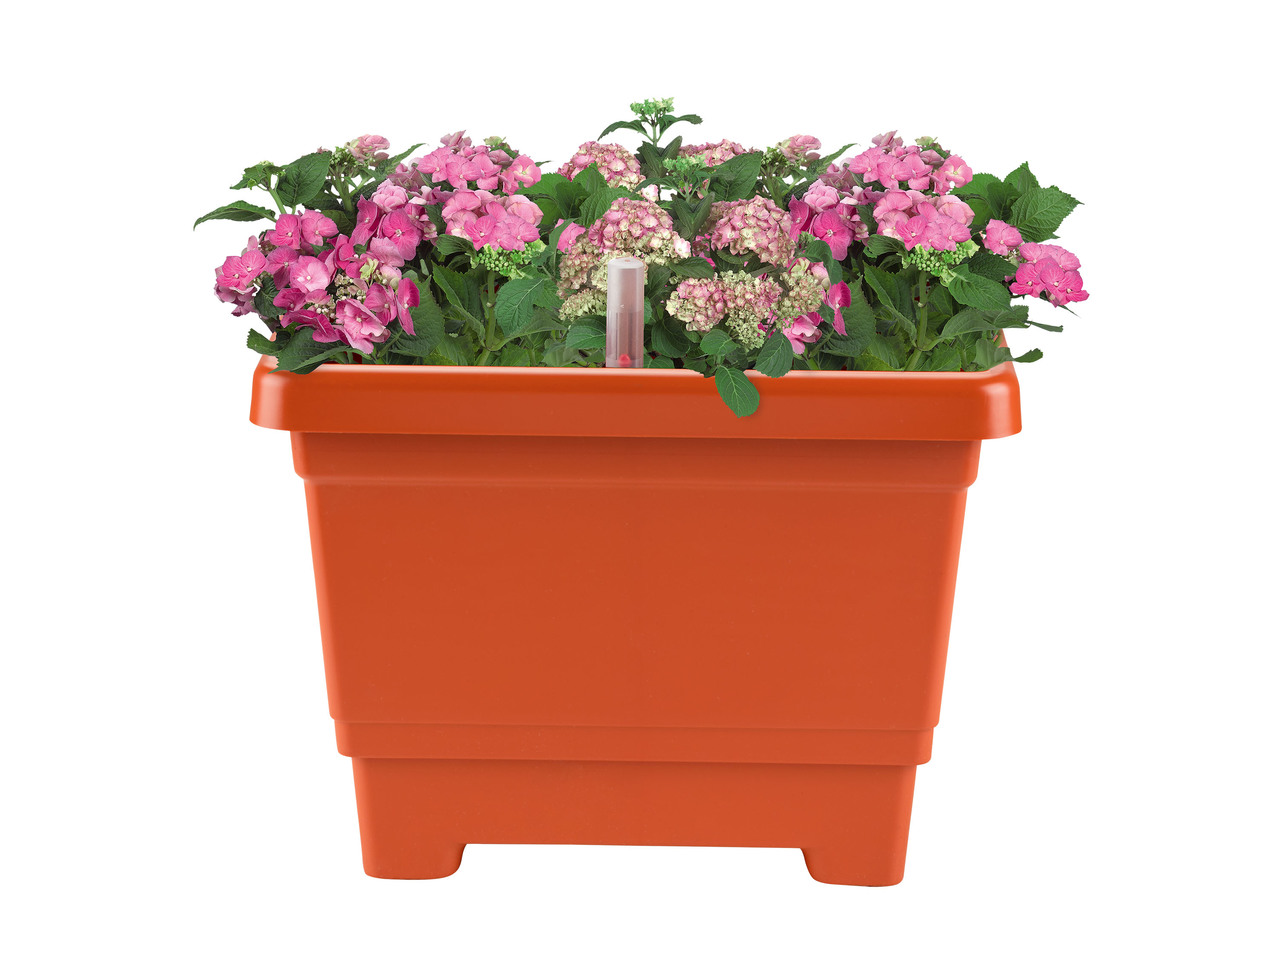 FLORABEST(R) Floreira/ Vaso com Sistema de Irrigação